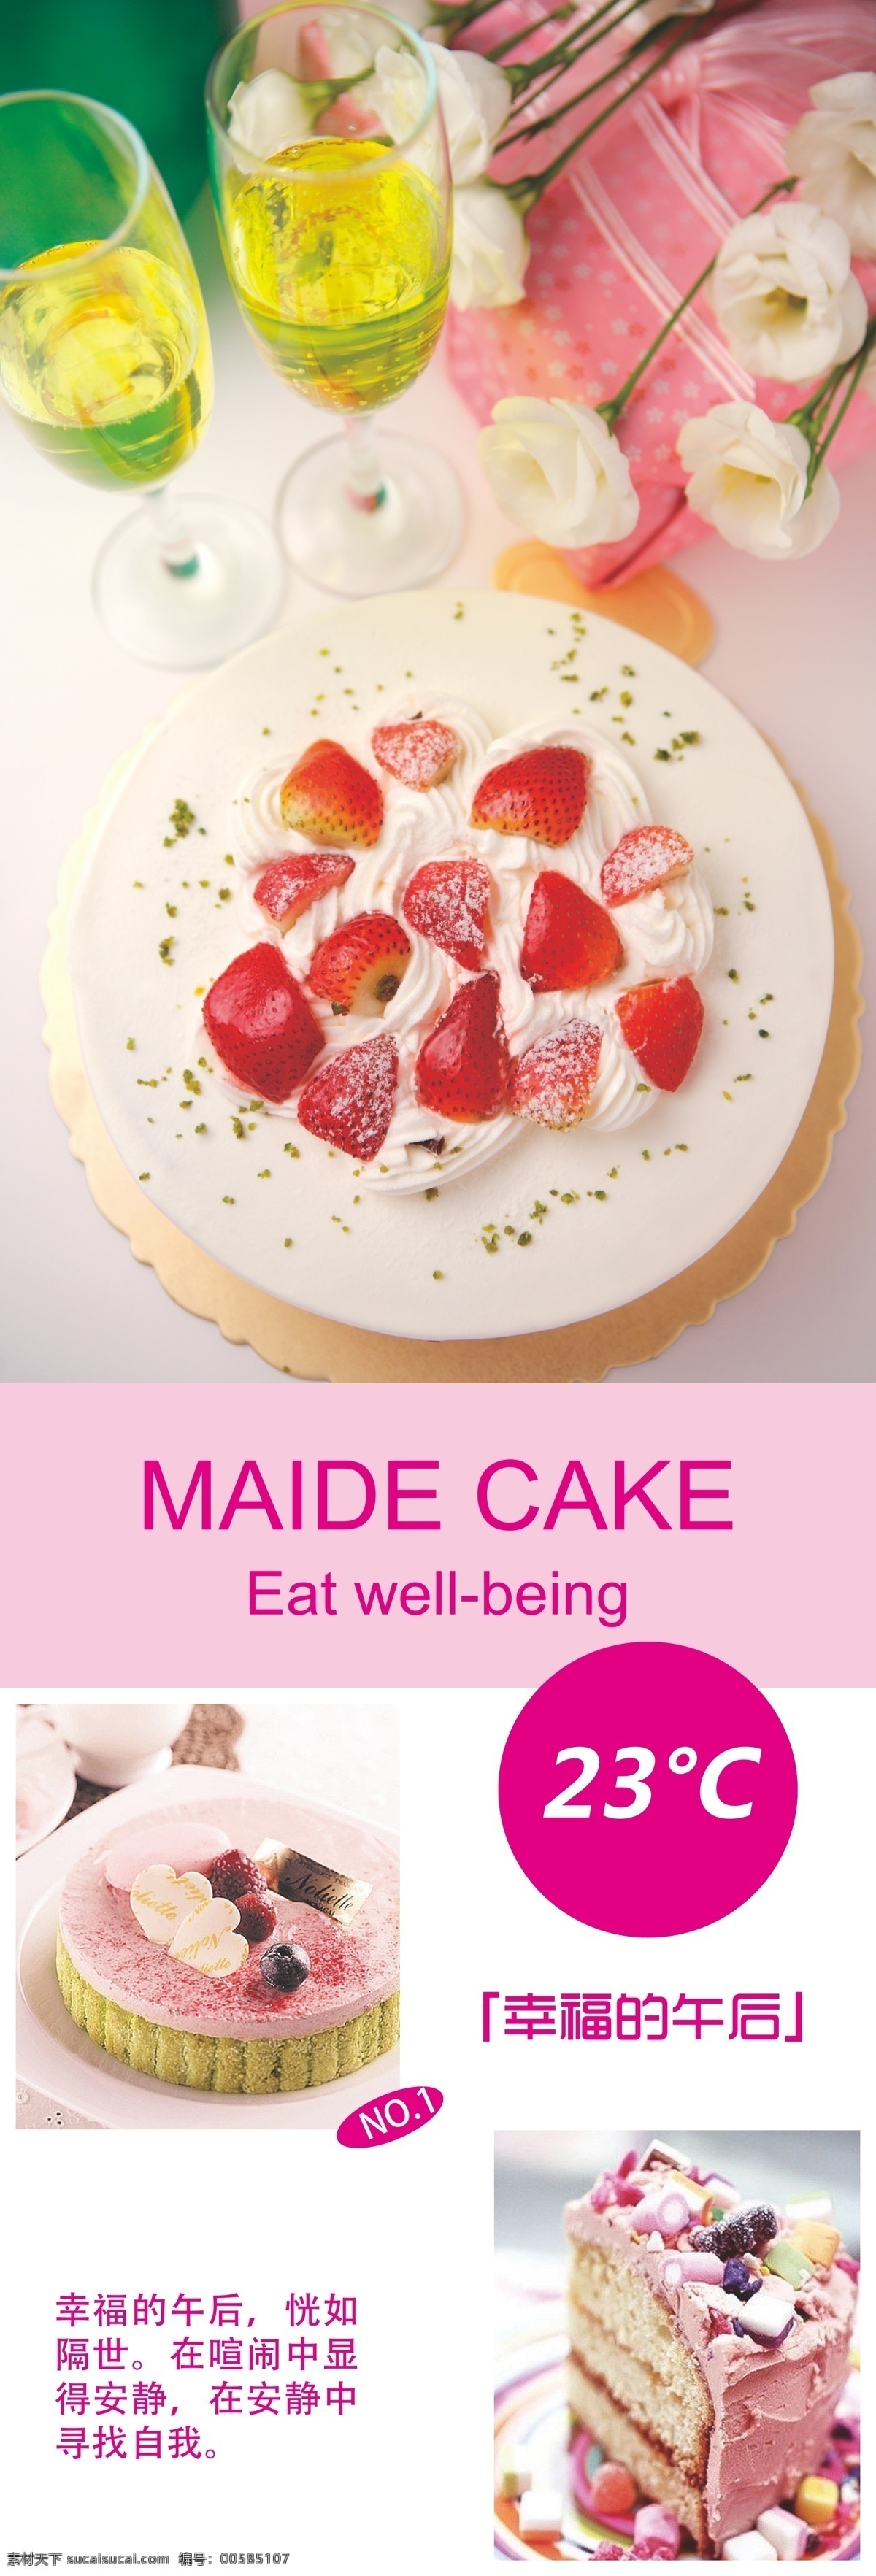 蛋糕 店 海报 模板 蛋糕店 海报模板 草莓 展架 易拉宝 白色